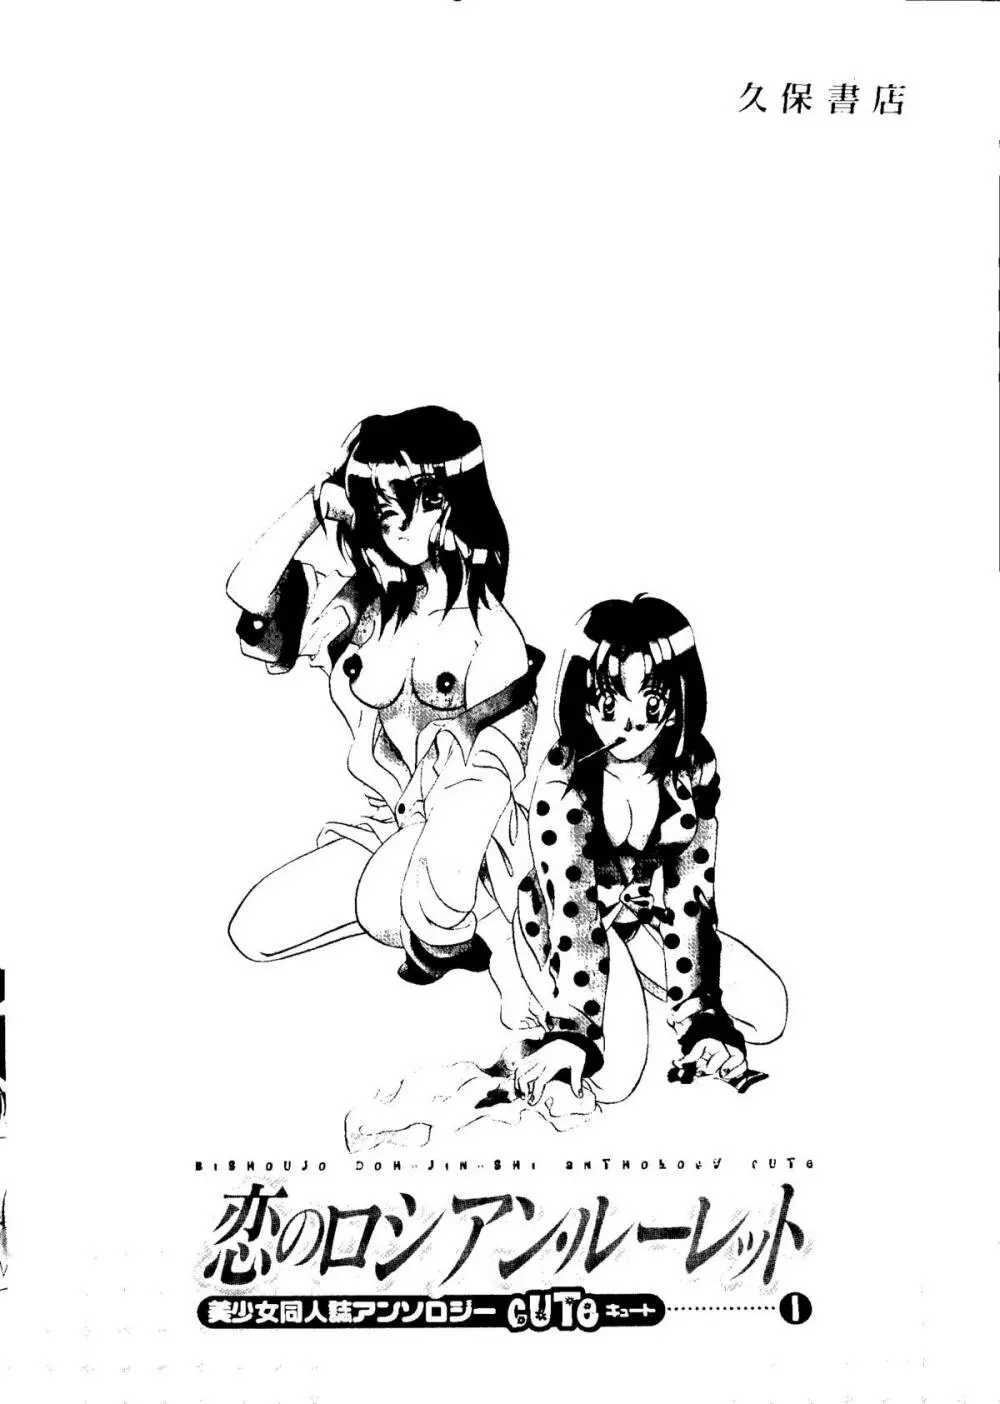 Bishoujo Doujinshi Anthology Cute 1 194ページ